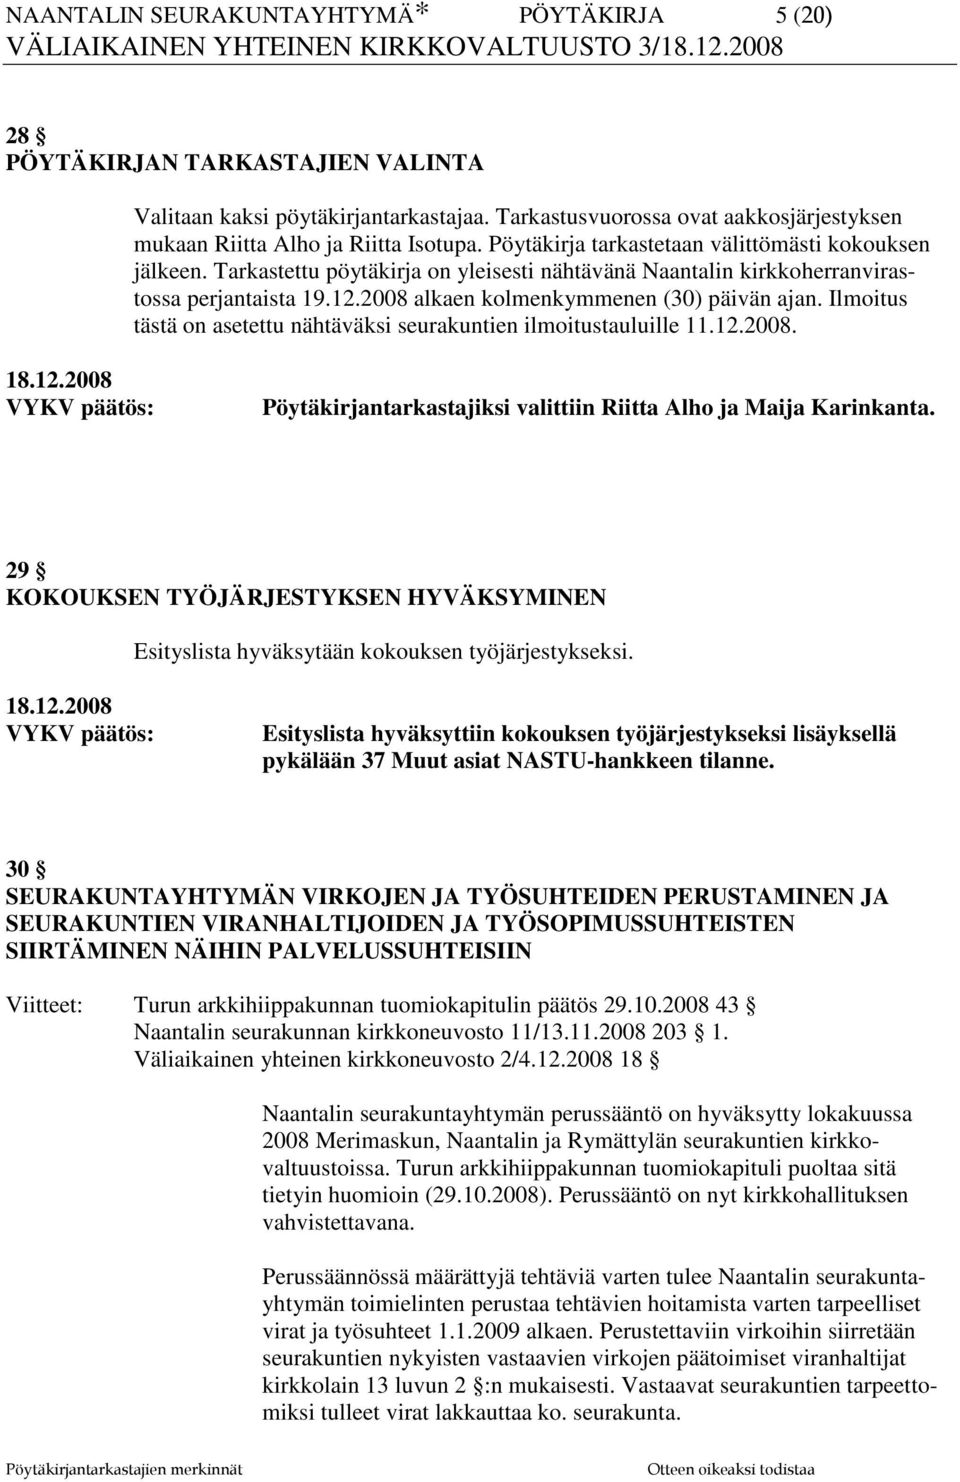 Ilmoitus tästä on asetettu nähtäväksi seurakuntien ilmoitustauluille 11.12.2008. Pöytäkirjantarkastajiksi valittiin Riitta Alho ja Maija Karinkanta.